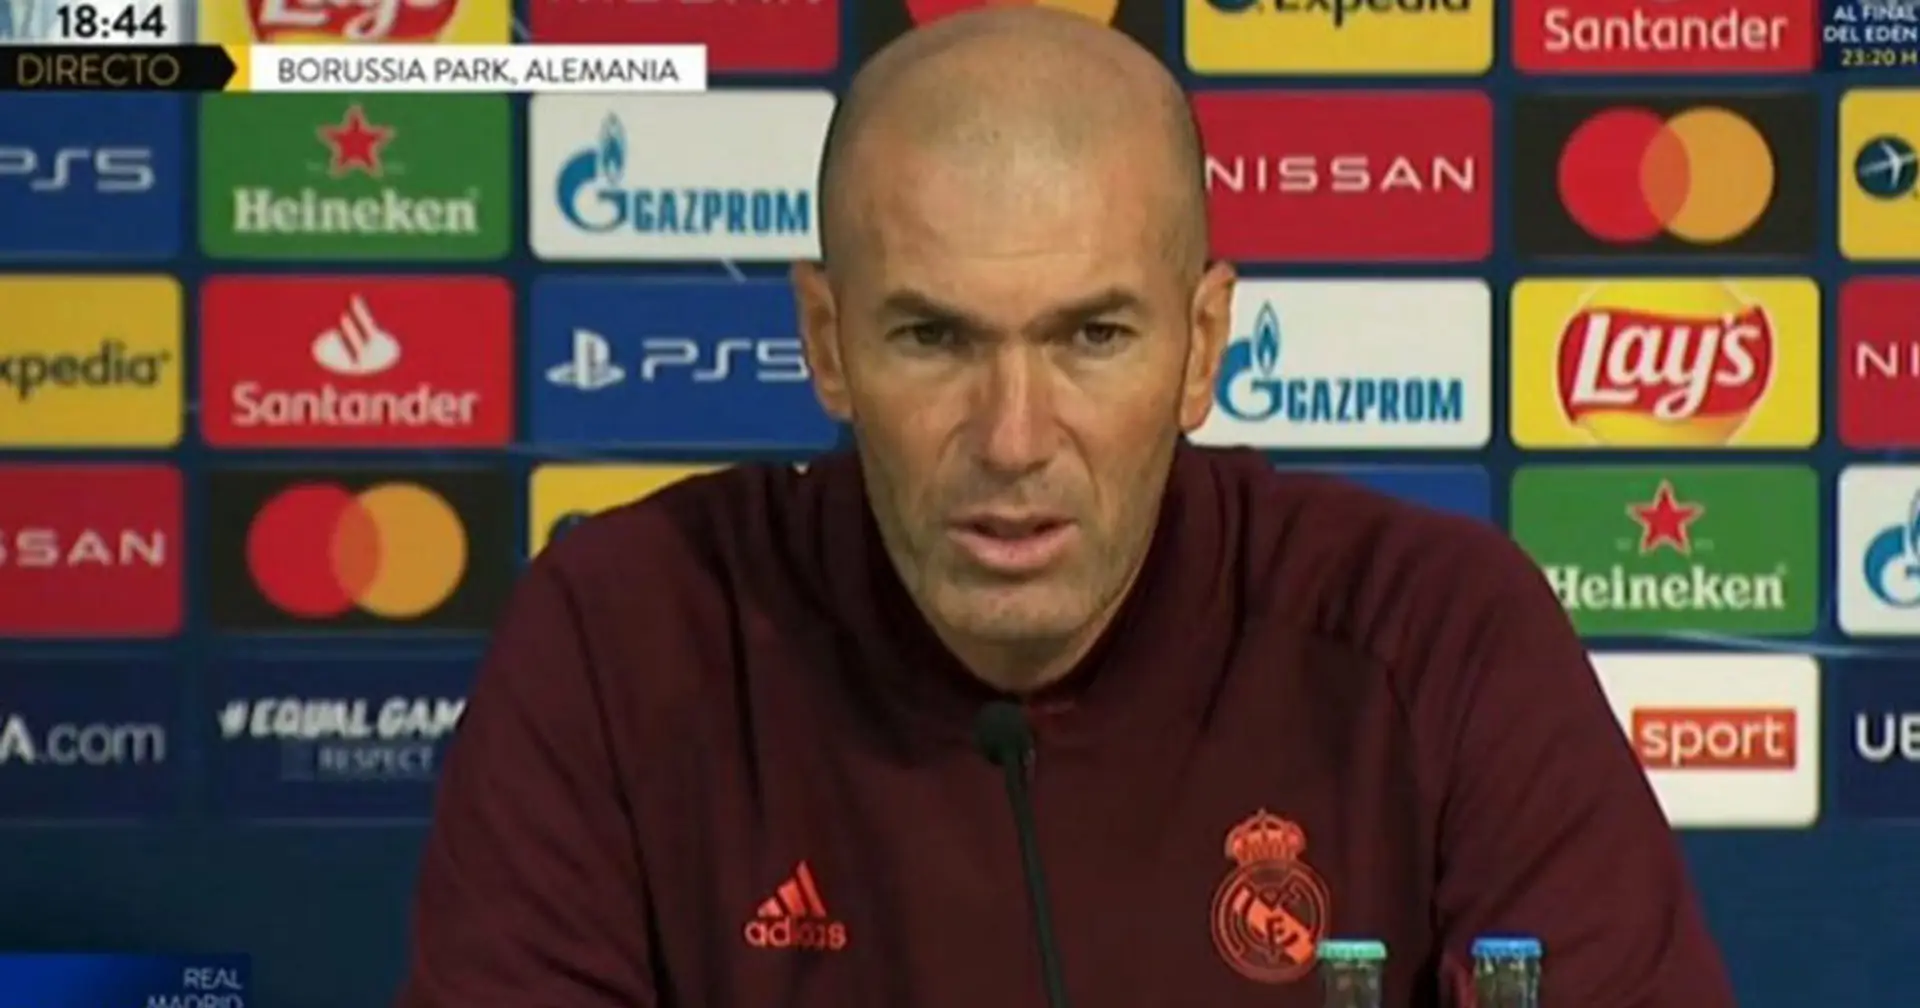 Zidane erwägt Rückkehr zu Real Madrid - Top-Quelle